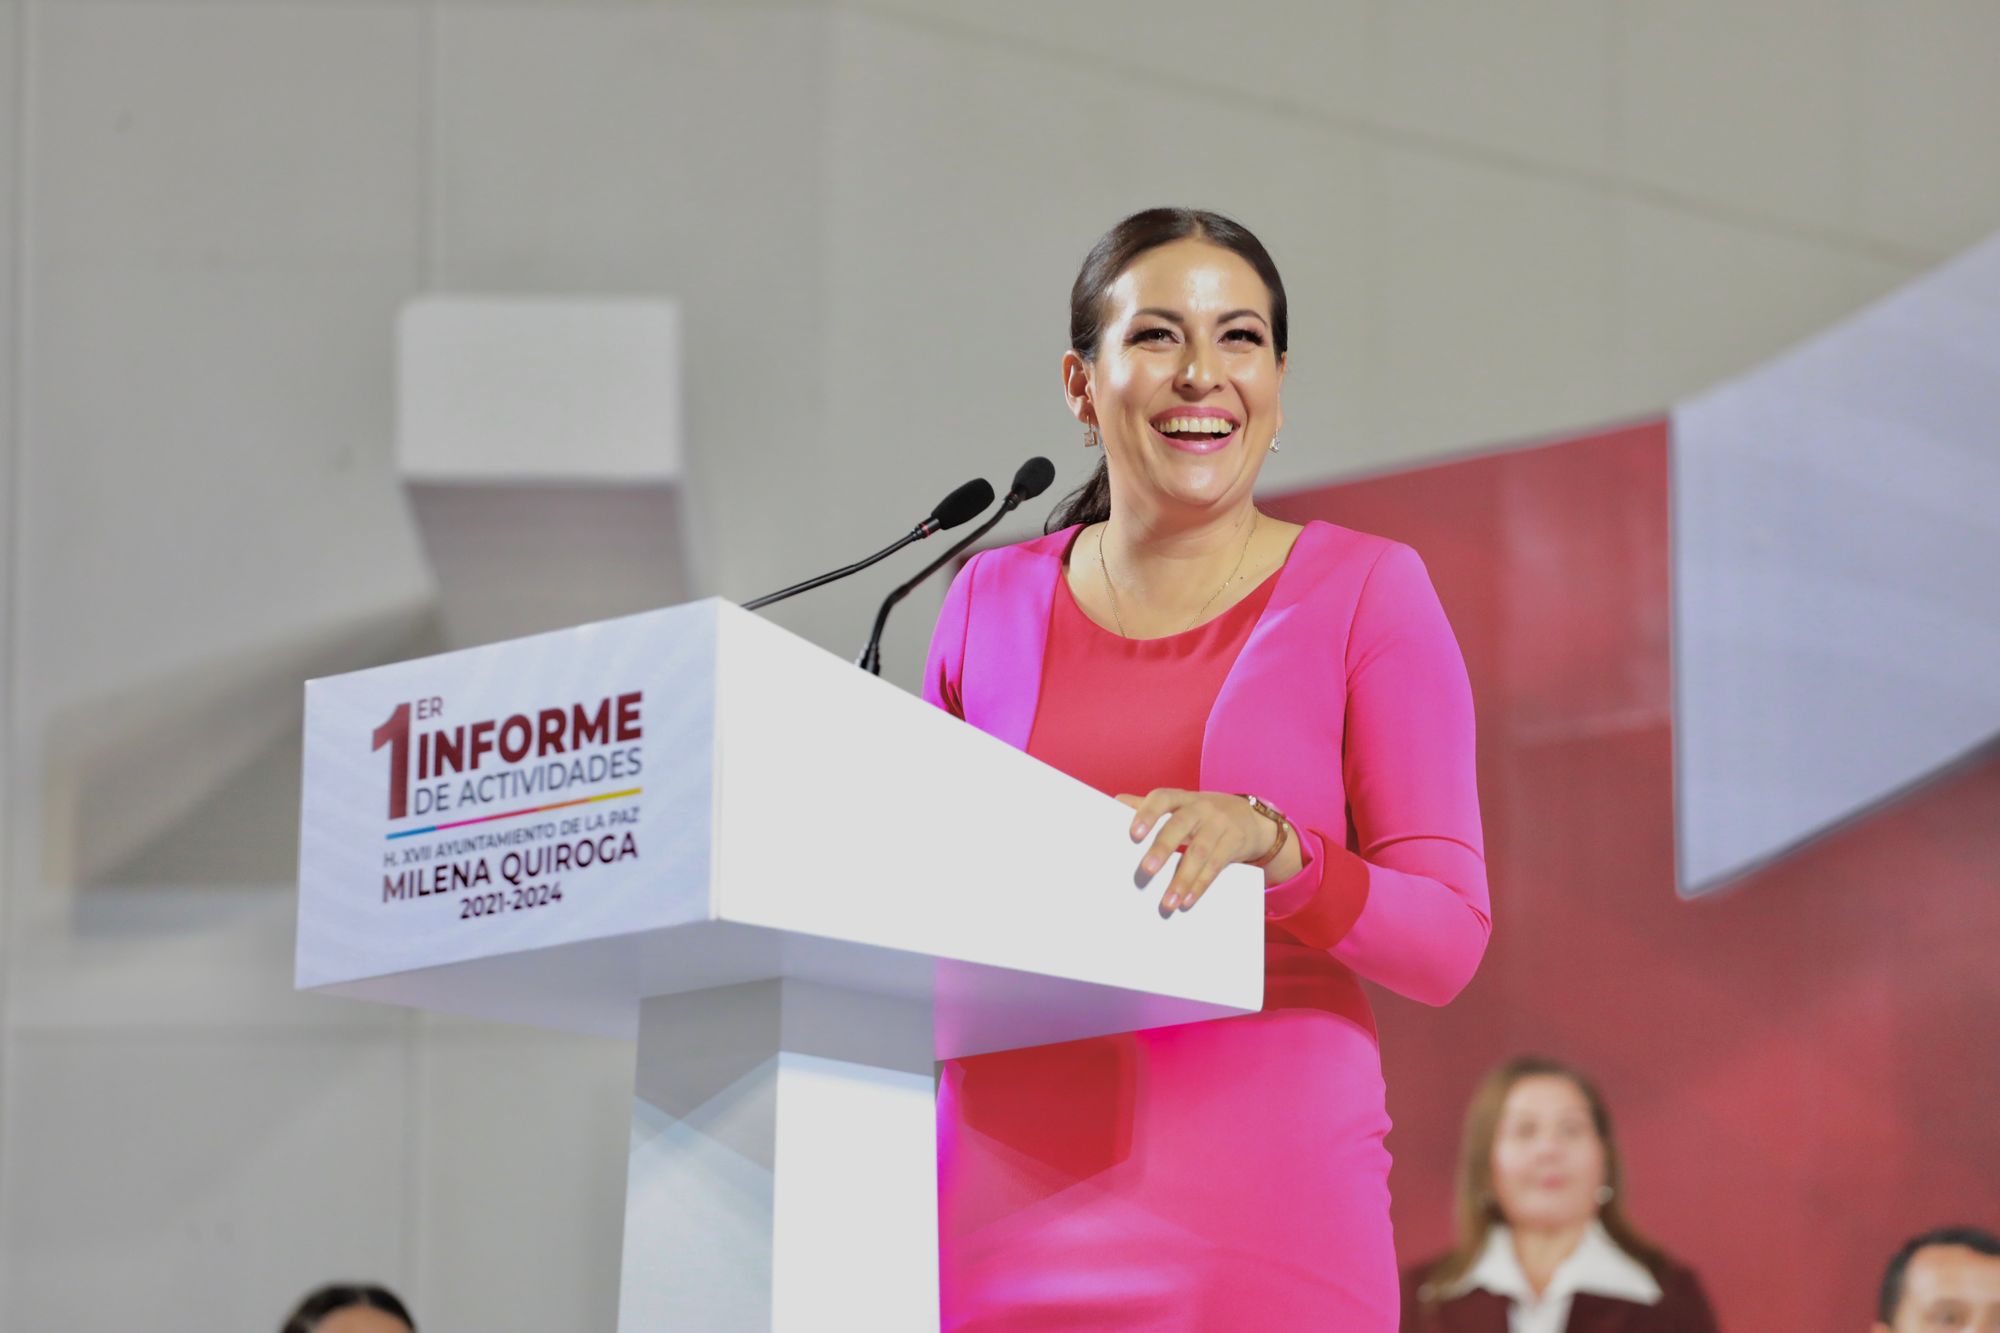 “Hemos eficientado la administración de los recursos, mejorando los servicios públicos”: Milena Quiroga